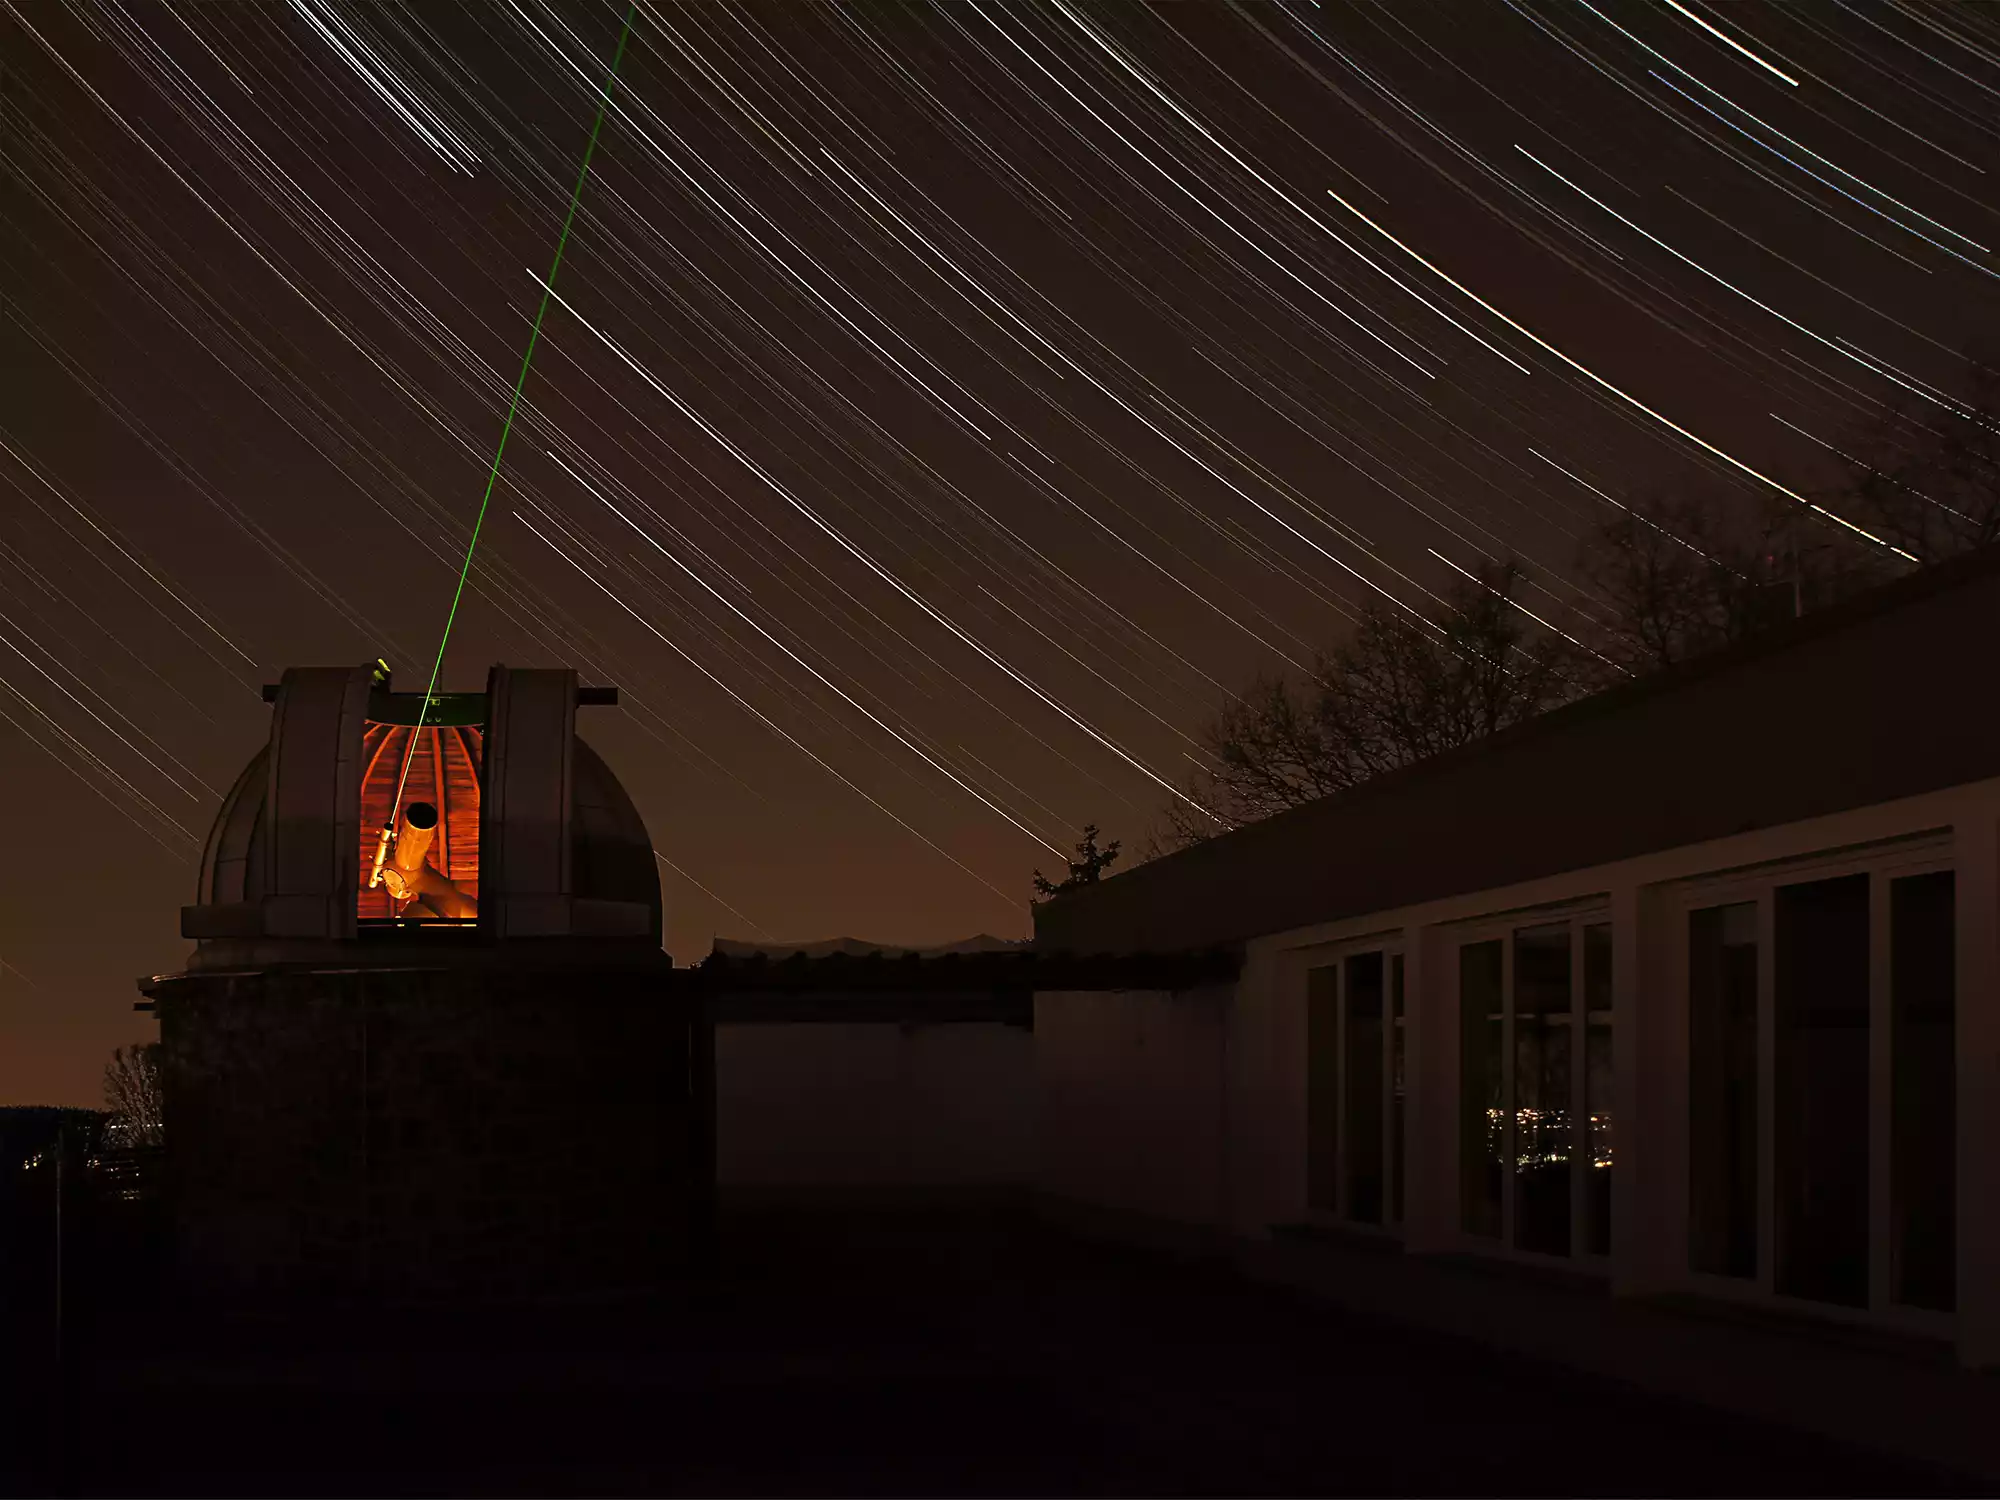 Zeiss Coudé Refraktor auf der Beobachtungsterrasse der Sternwarte Radebeul mit Sternspuren durch Langzeitbelichtung des Fotos